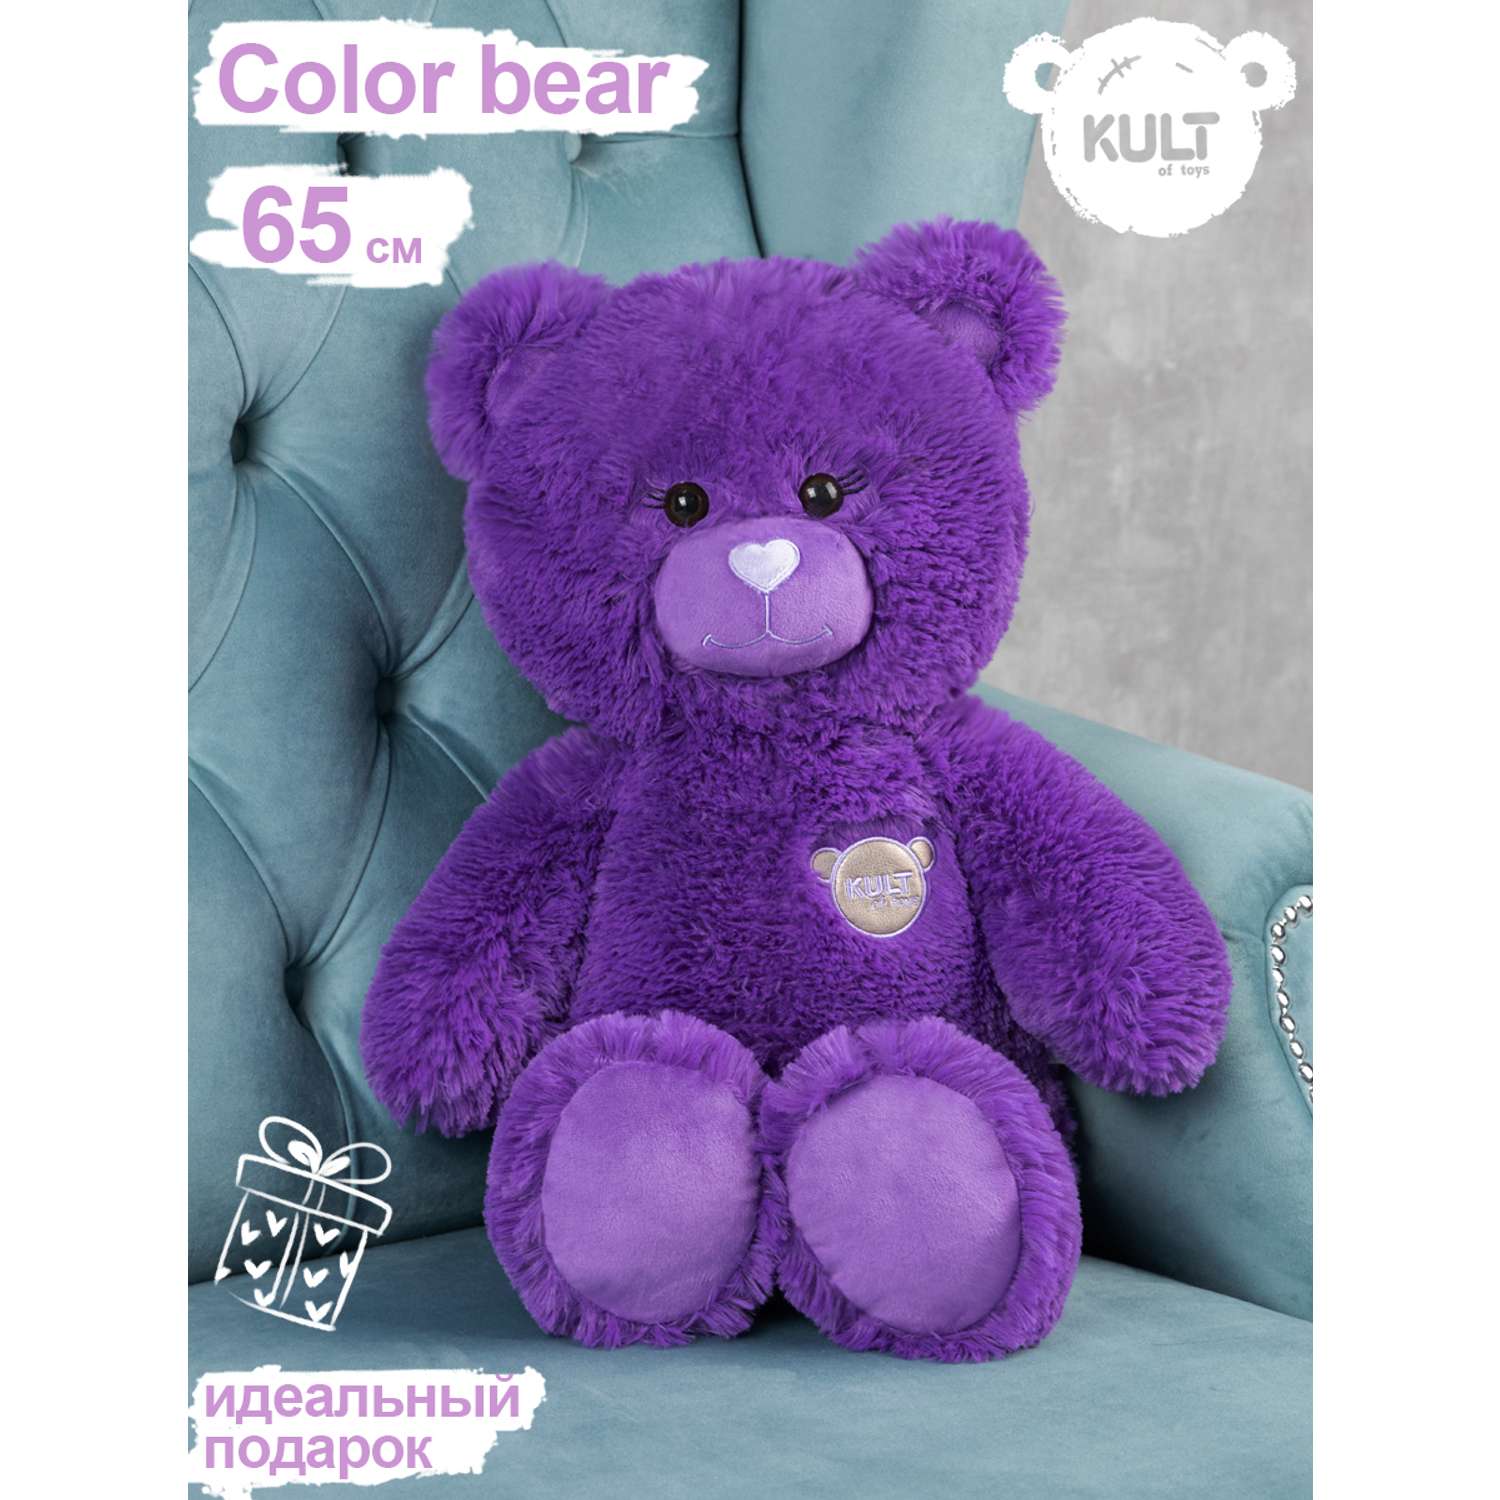 Мягкая игрушка KULT of toys Плюшевый медведь Color 65 см цвет фиолетовый - фото 2